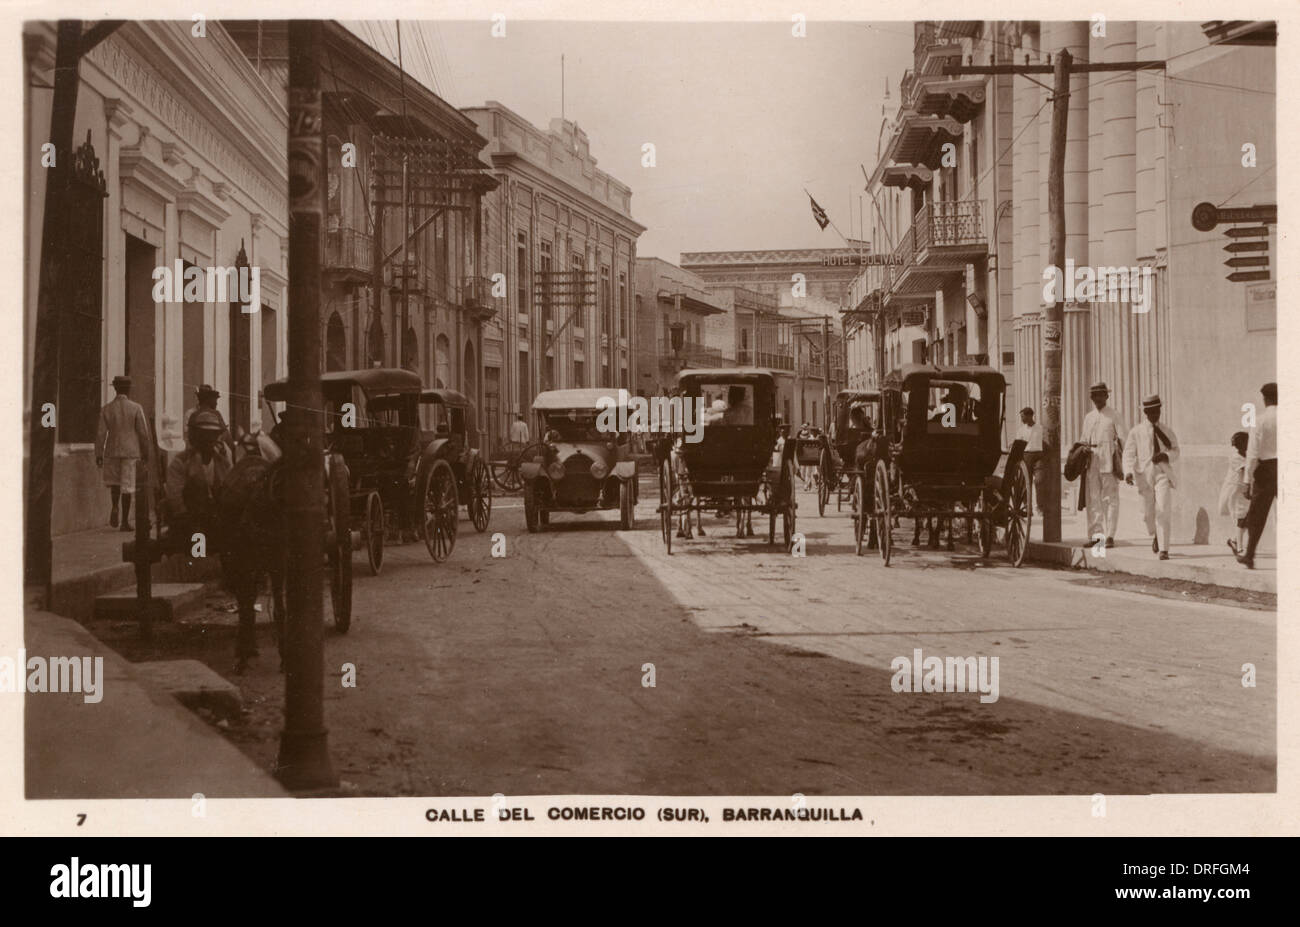 Barranquilla, Kolumbien - Calle del Comercio Stockfoto